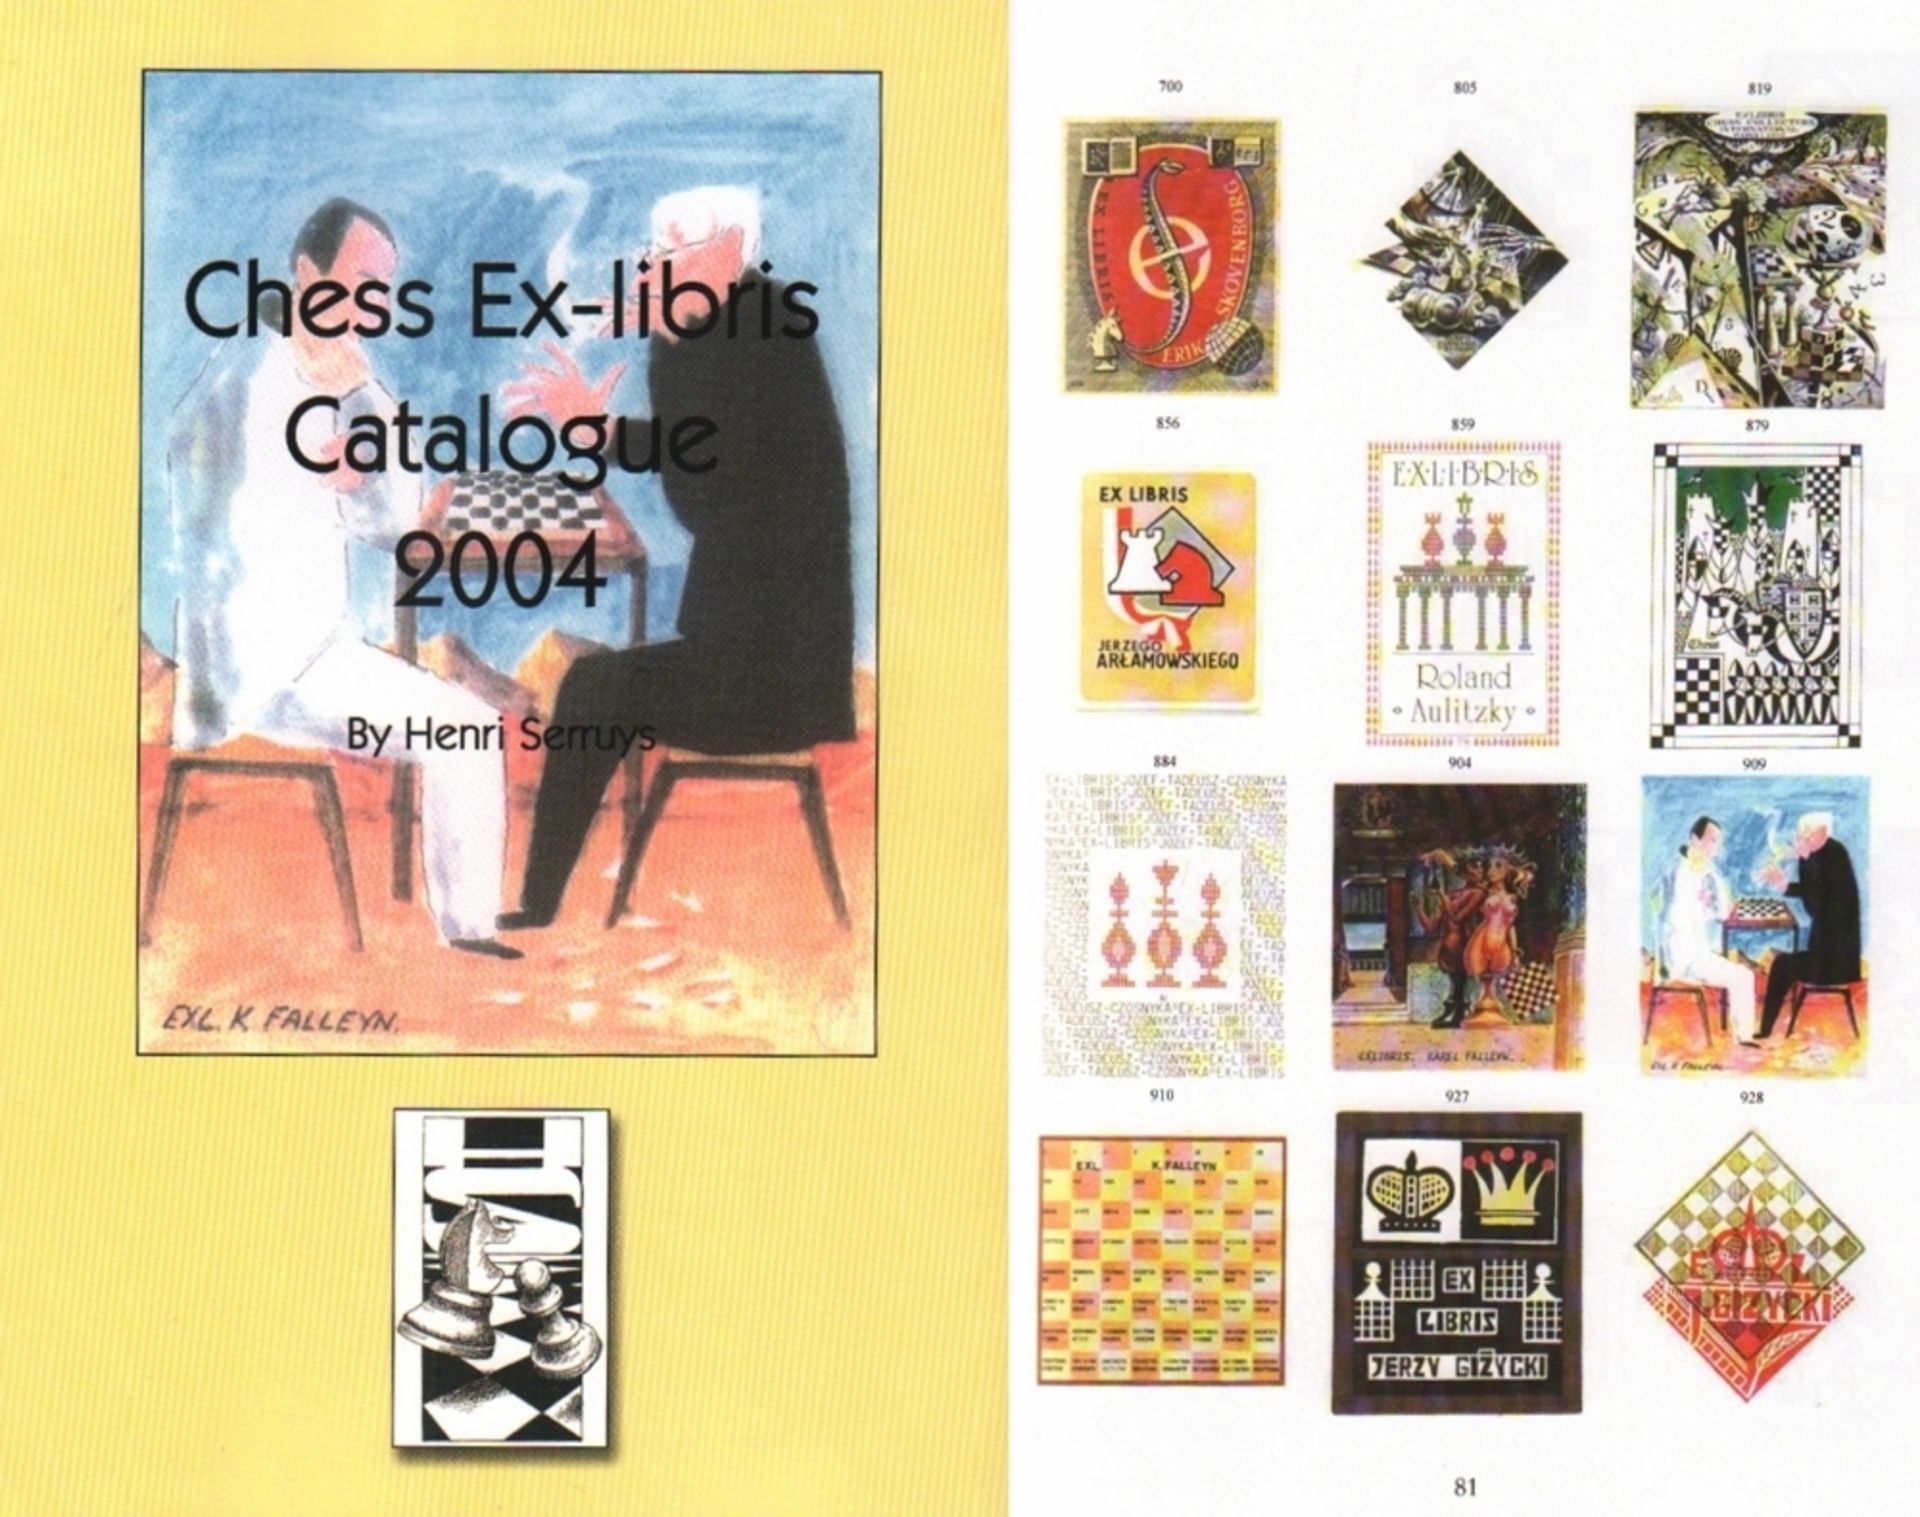 Serruys, Henri. Chess Ex - libris Catalogue 2004. Antwerpen, Selbstverlag, 2004. 4°. Mit vielen